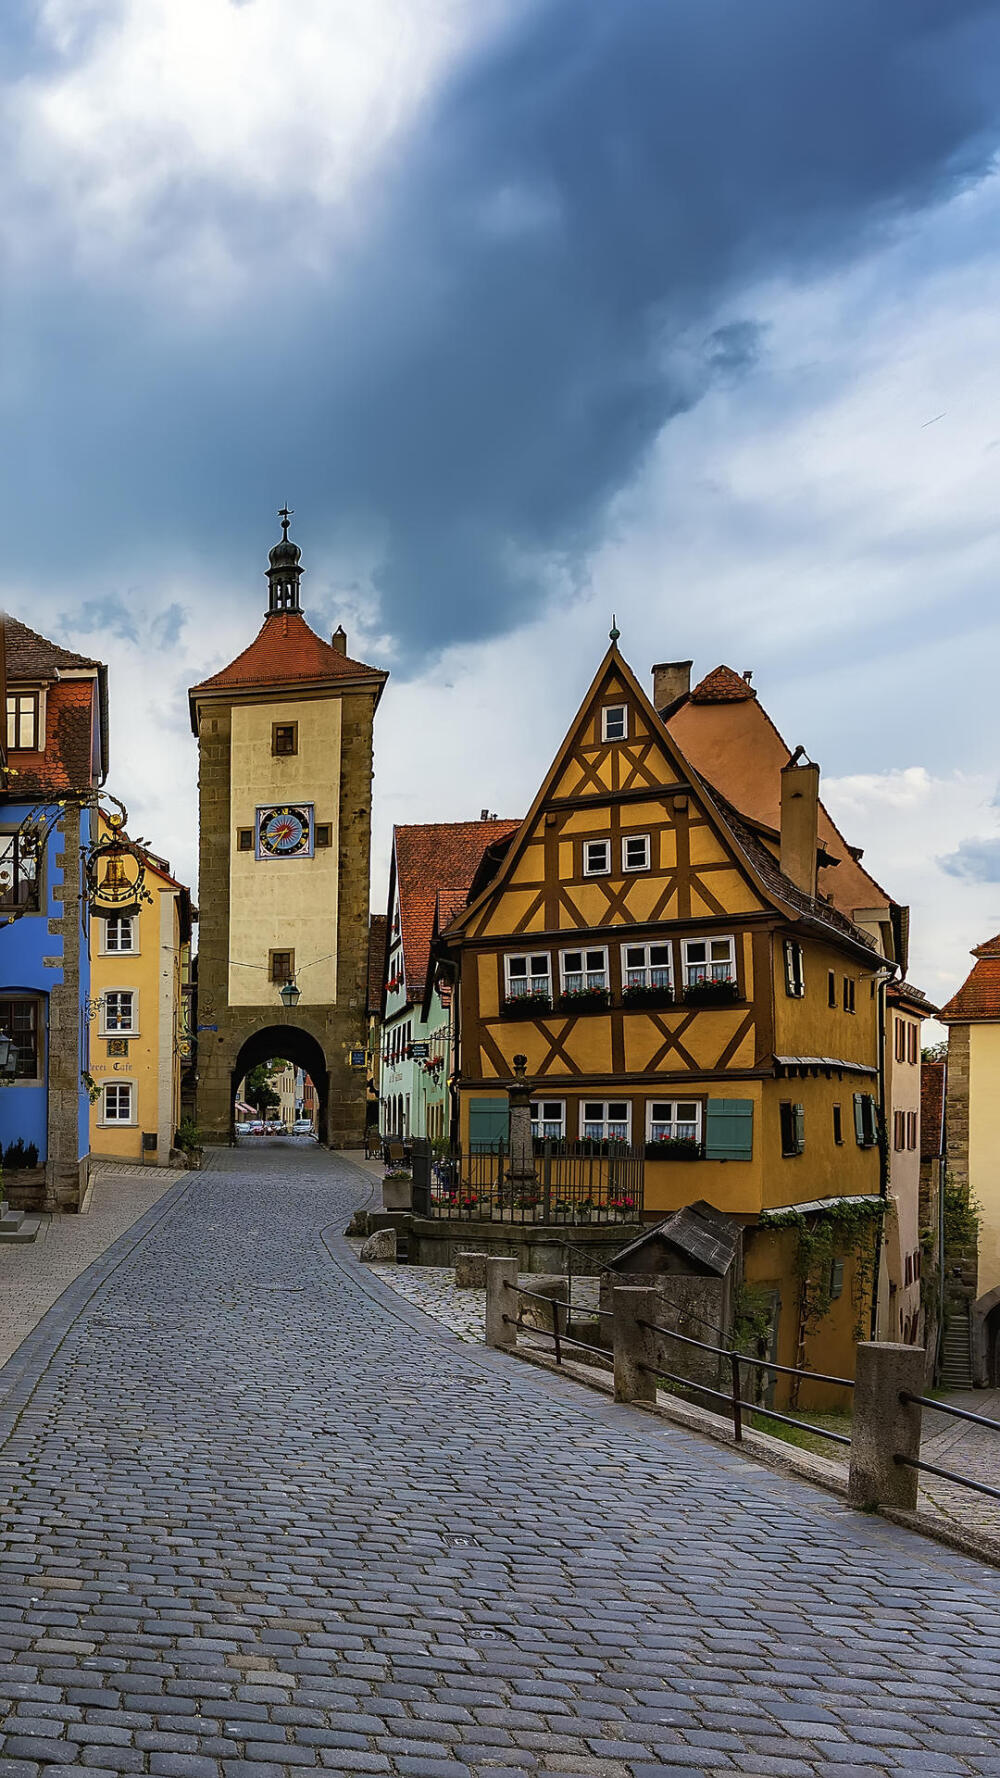 罗腾堡德国巴伐利亚最出名的小镇,有中世纪明珠的美称,小城里石巷